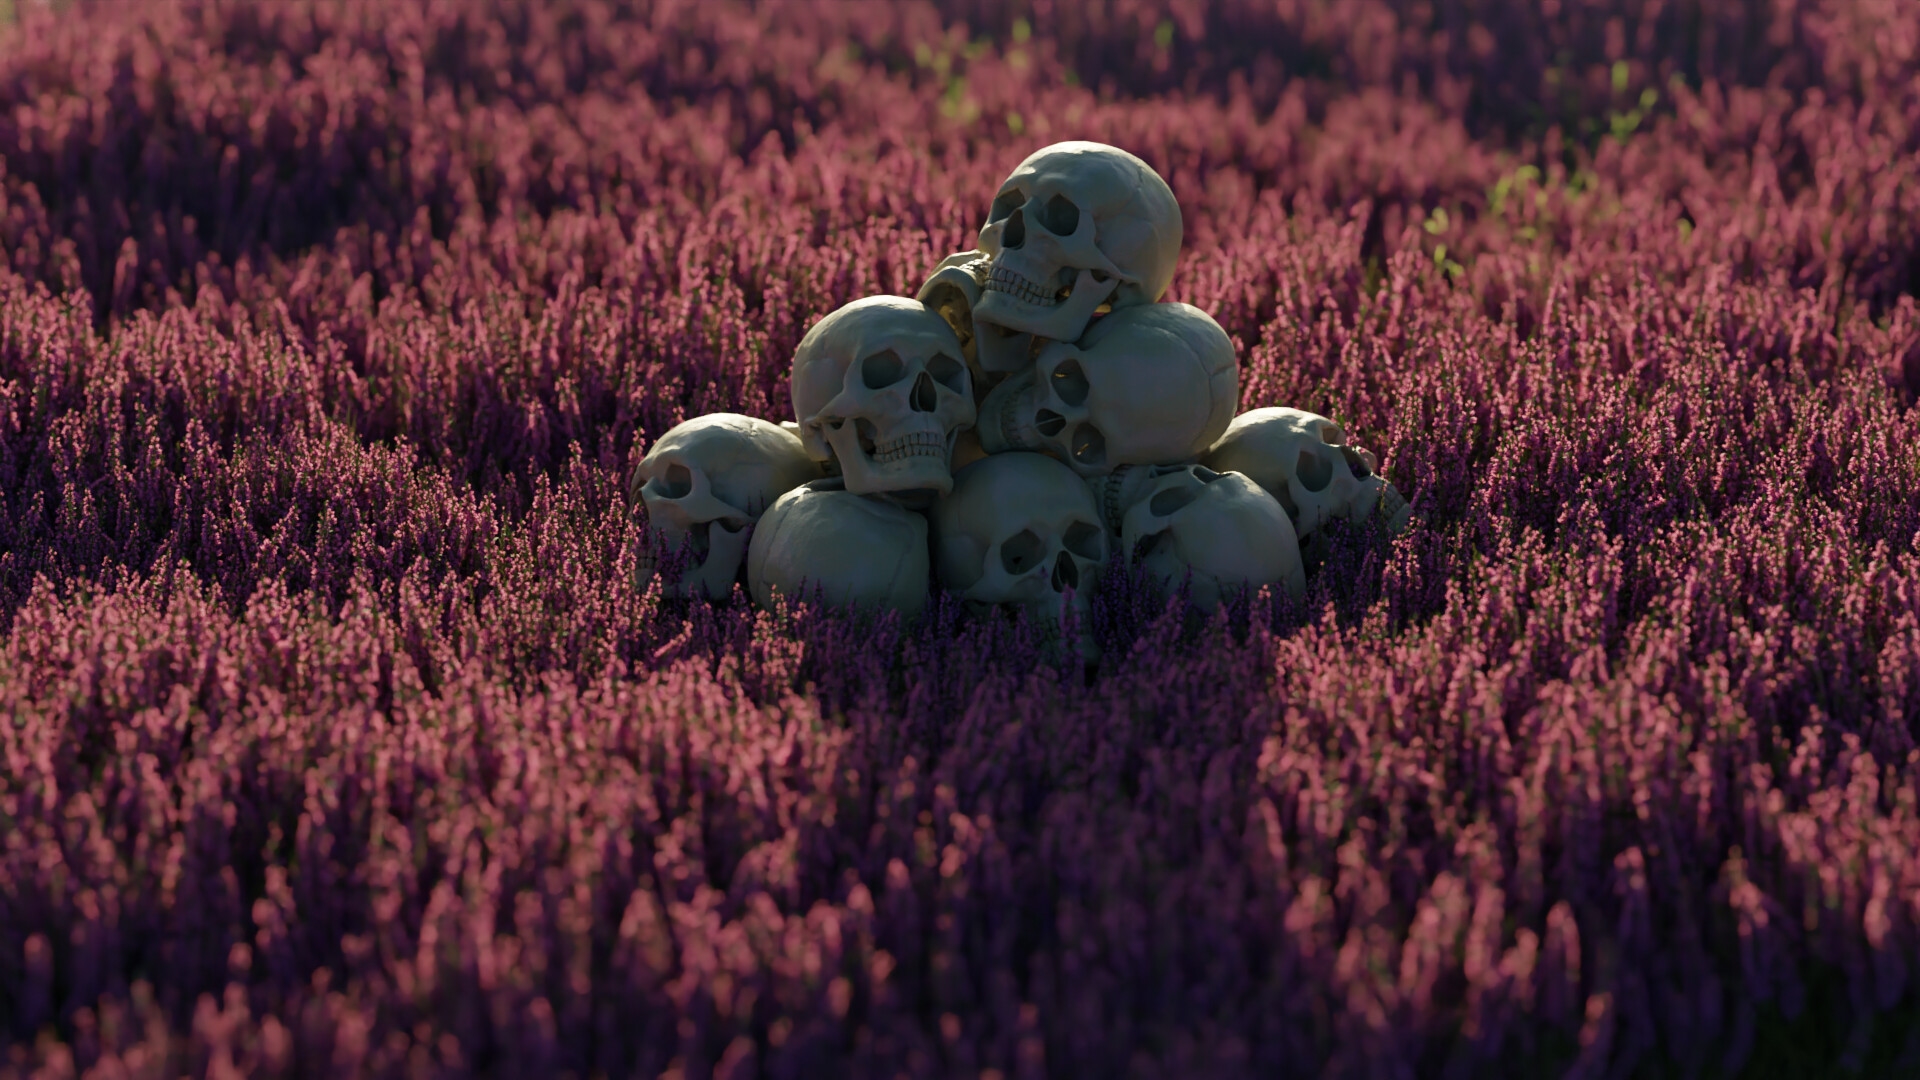 General 1920x1080 digital art flowers lavender skull iwo pilc Blender depth of field natural light